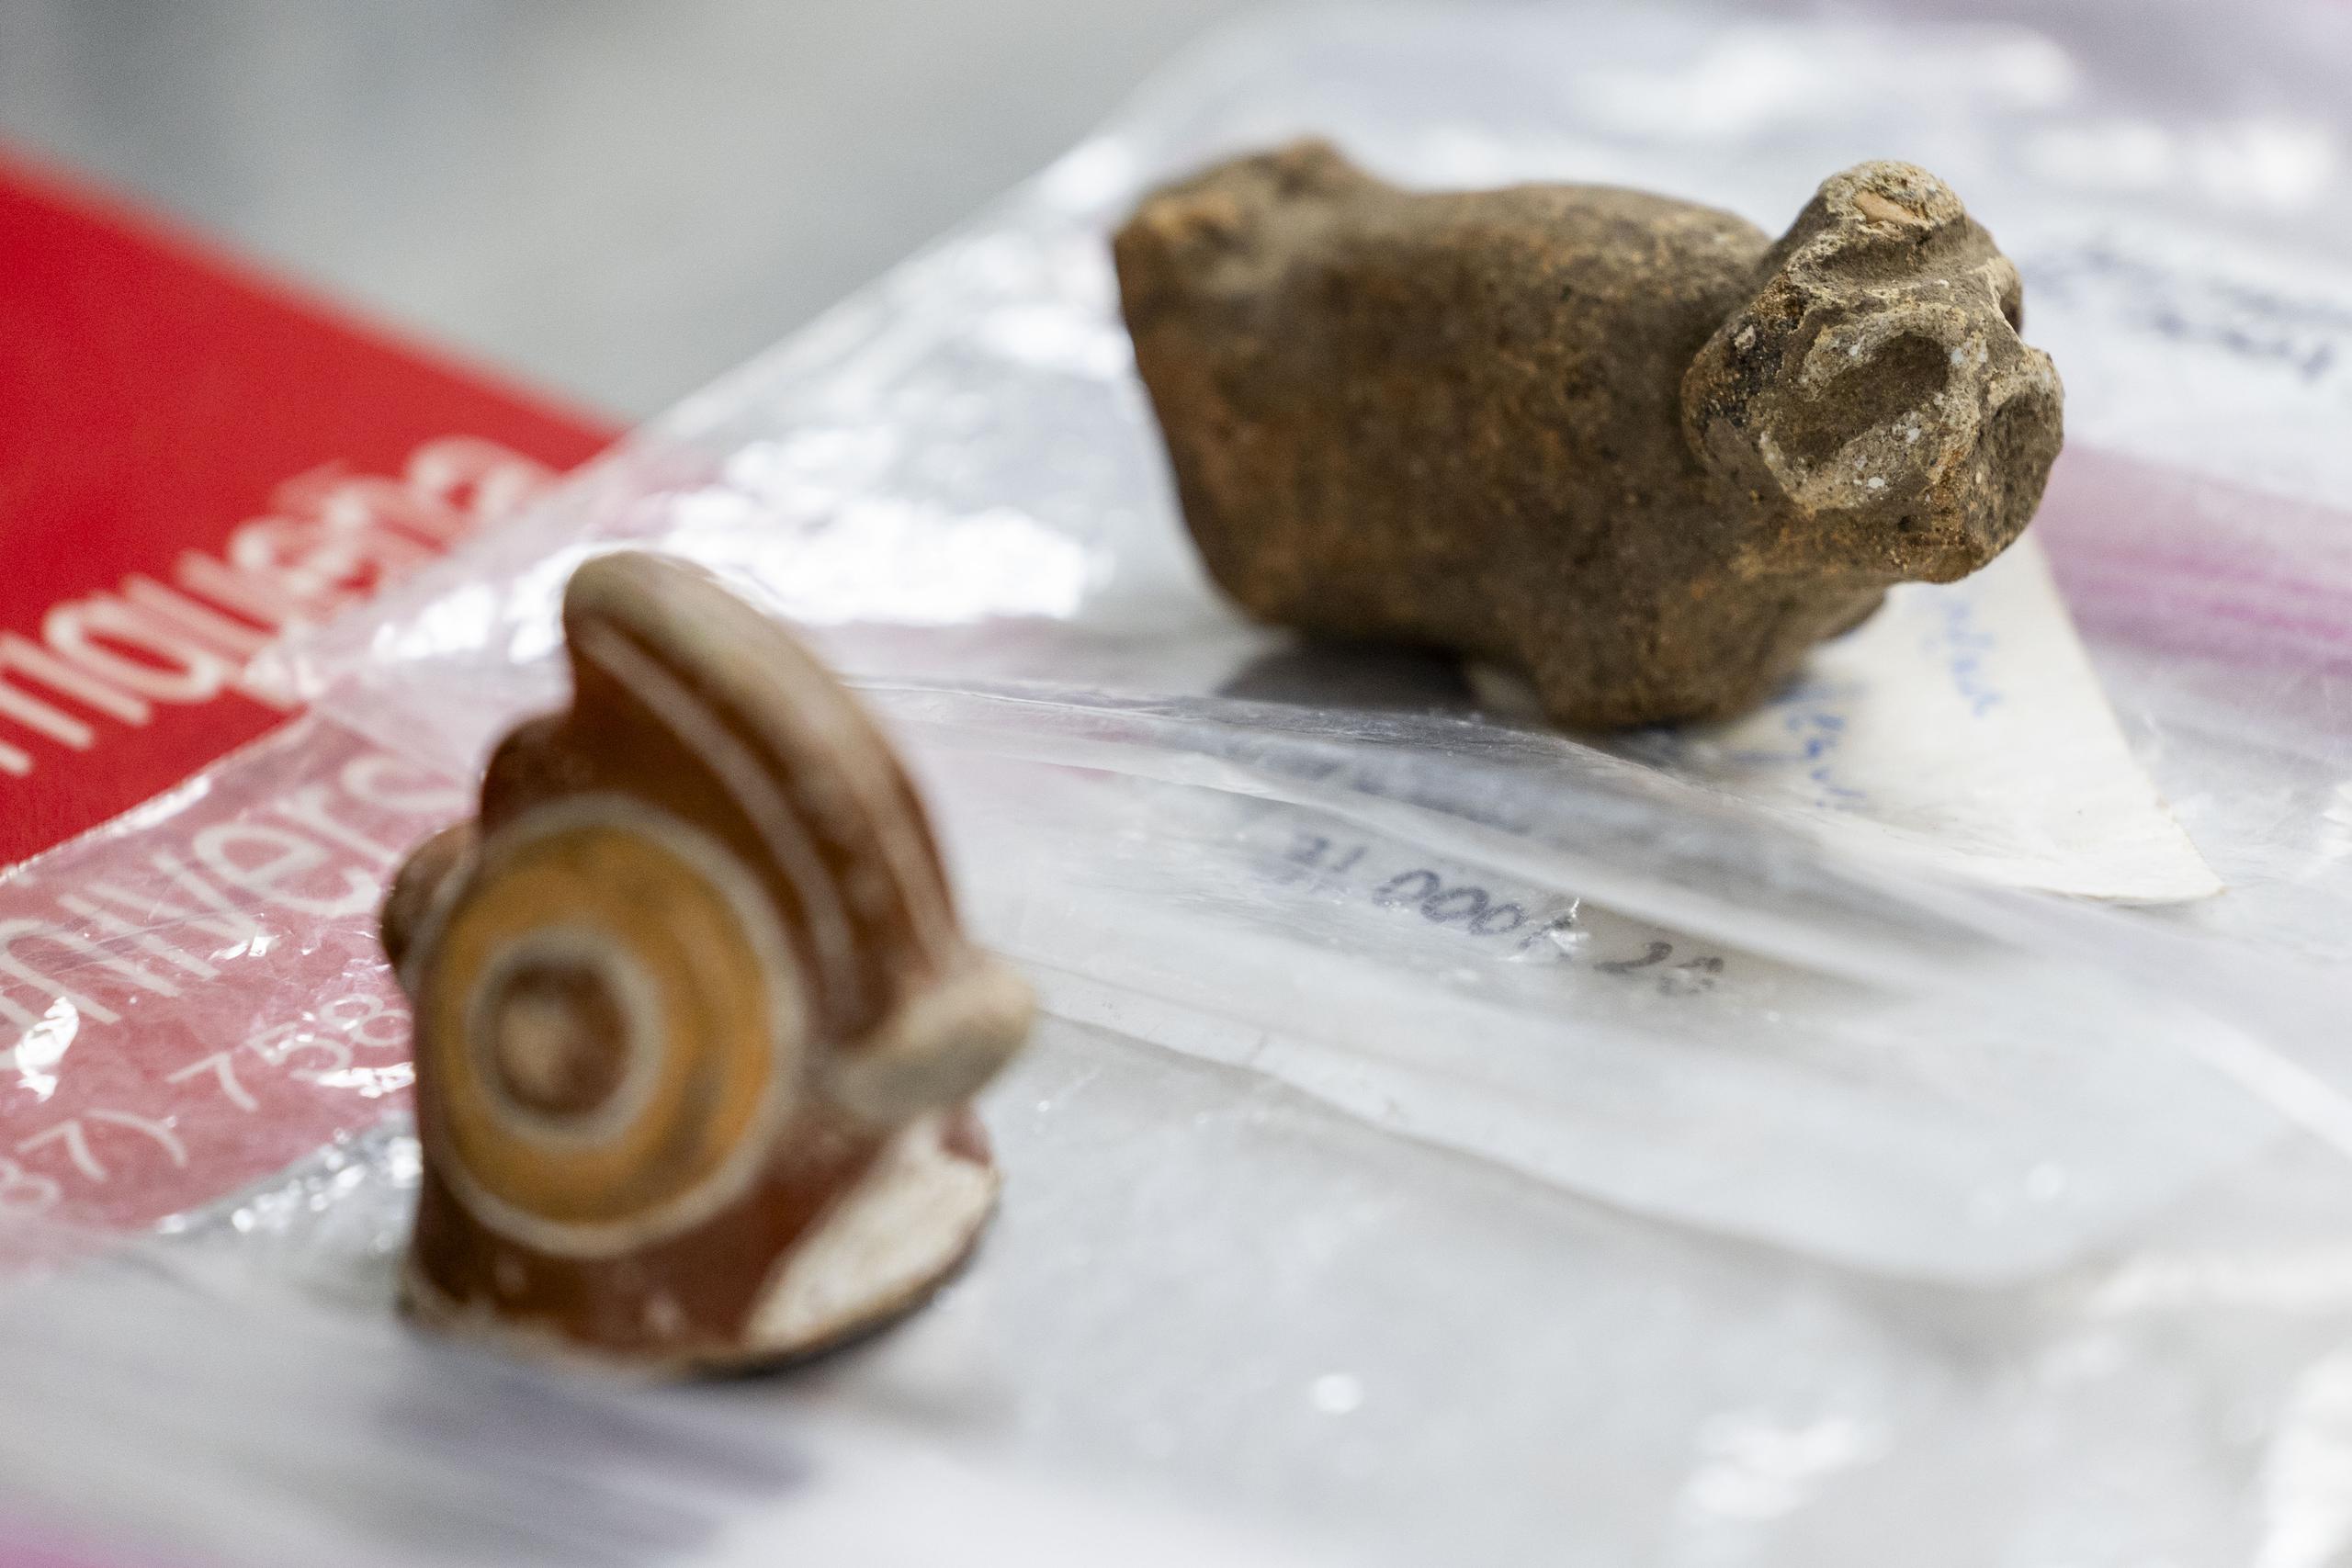 Estas piezas fueron encontradas en Humacao y llevadas a la UPRU.

Xavier Garcia / Fotoperiodista 